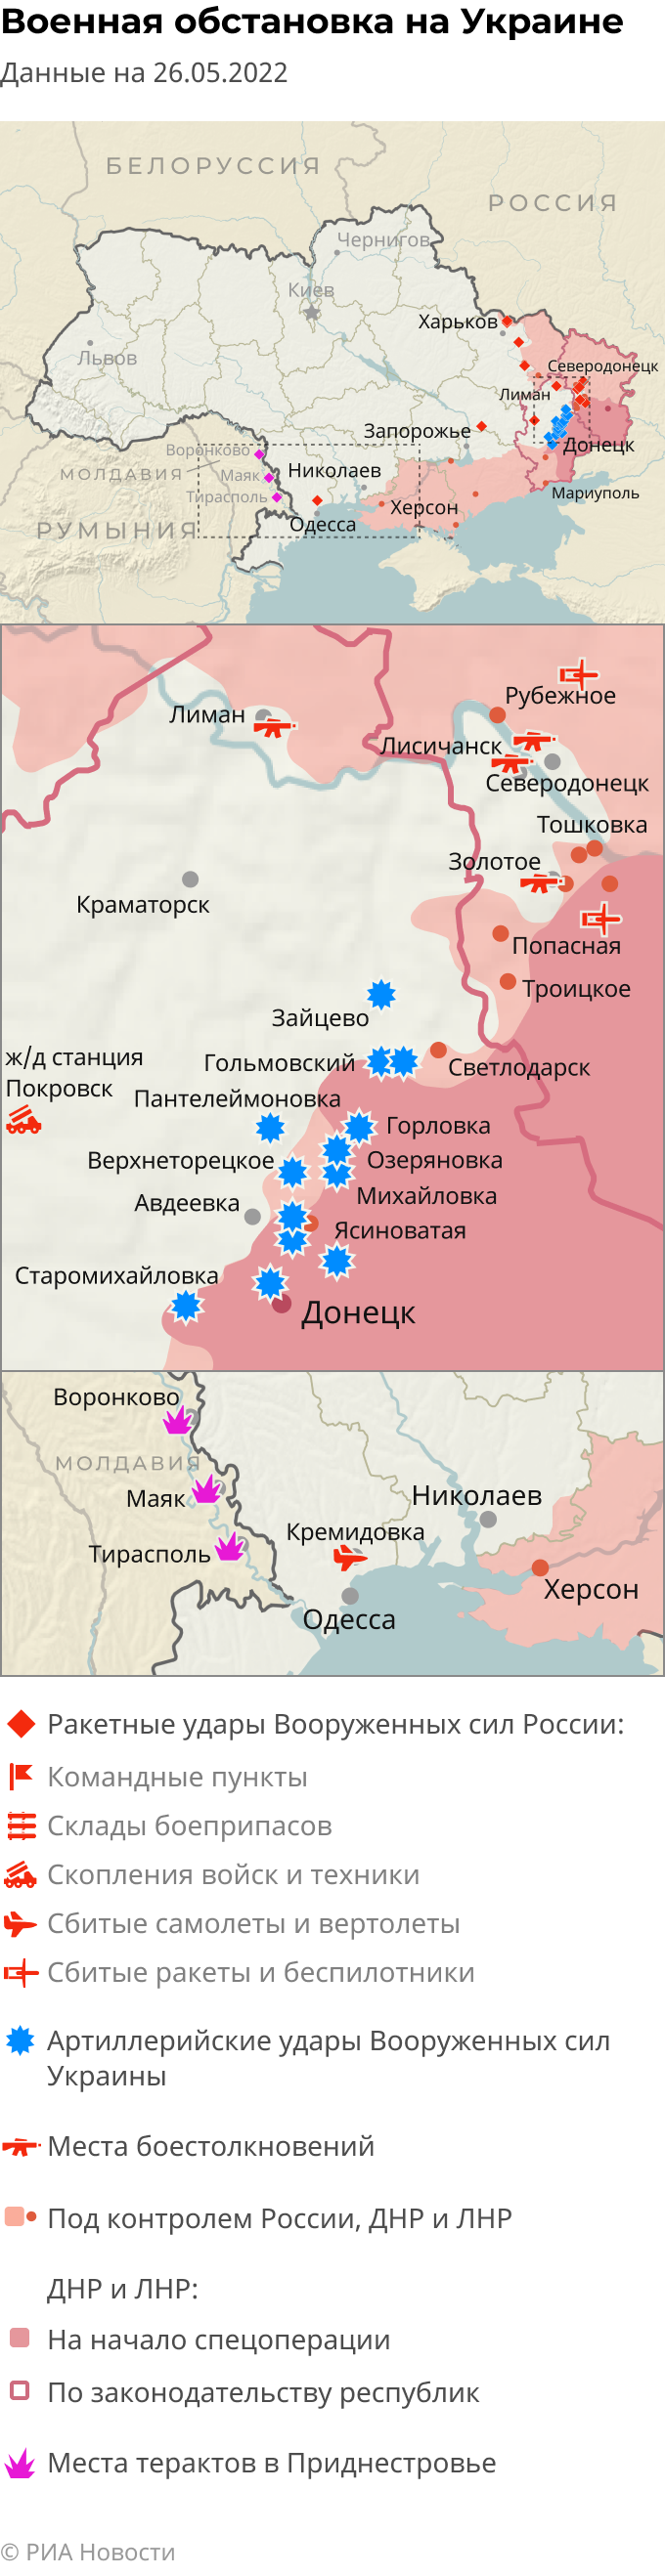 Показать линию фронта на украине сегодня карта боевых действий